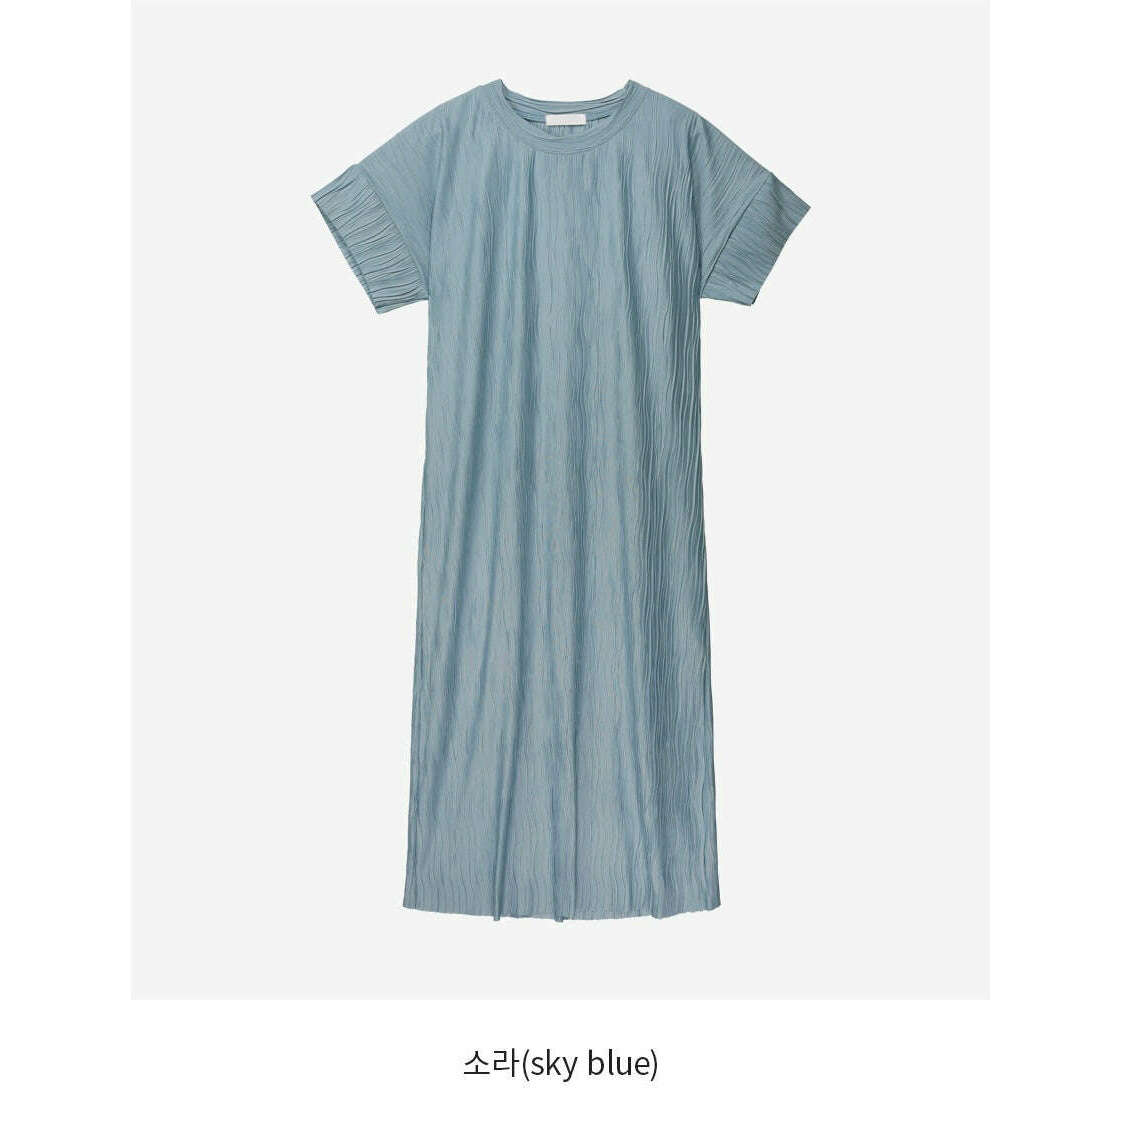 MUMMY.cc:波浪紋寬鬆氣質連身裙